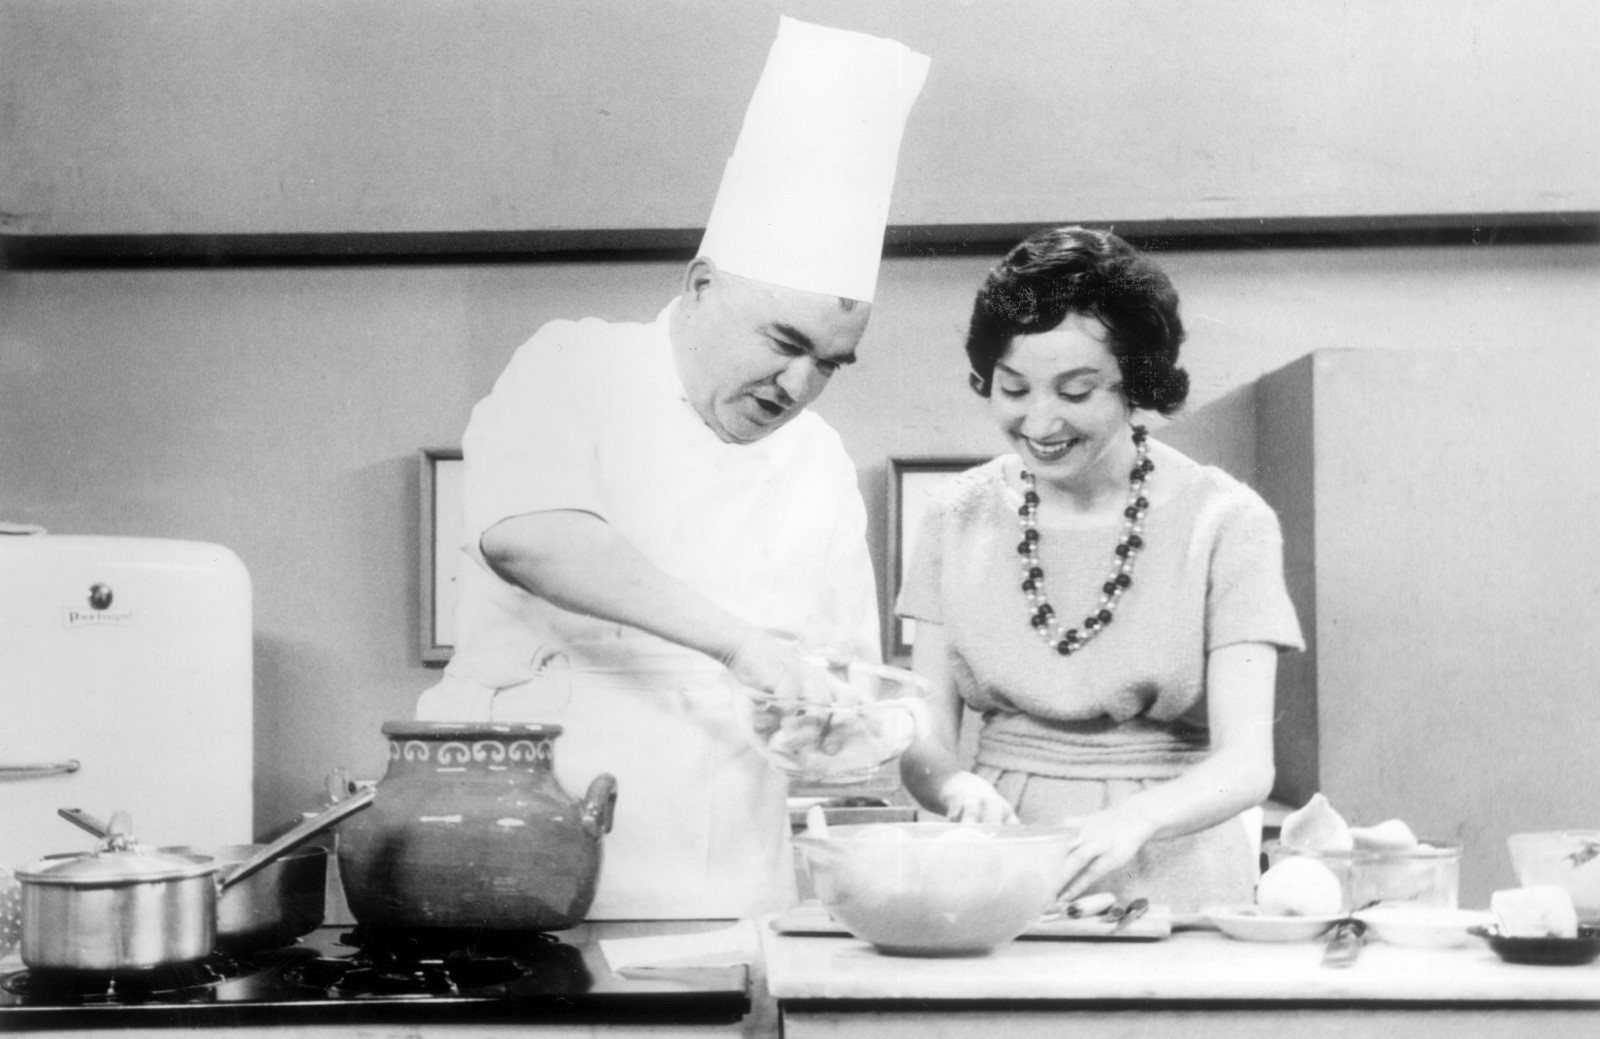 Maria de Lourdes Modesto + com o chefe Joao Ribeiro, por muitos considerado o nosso maior cozinheiro do século XX, no programa Culinaria, RTP 1958-1970  -02/08/25-